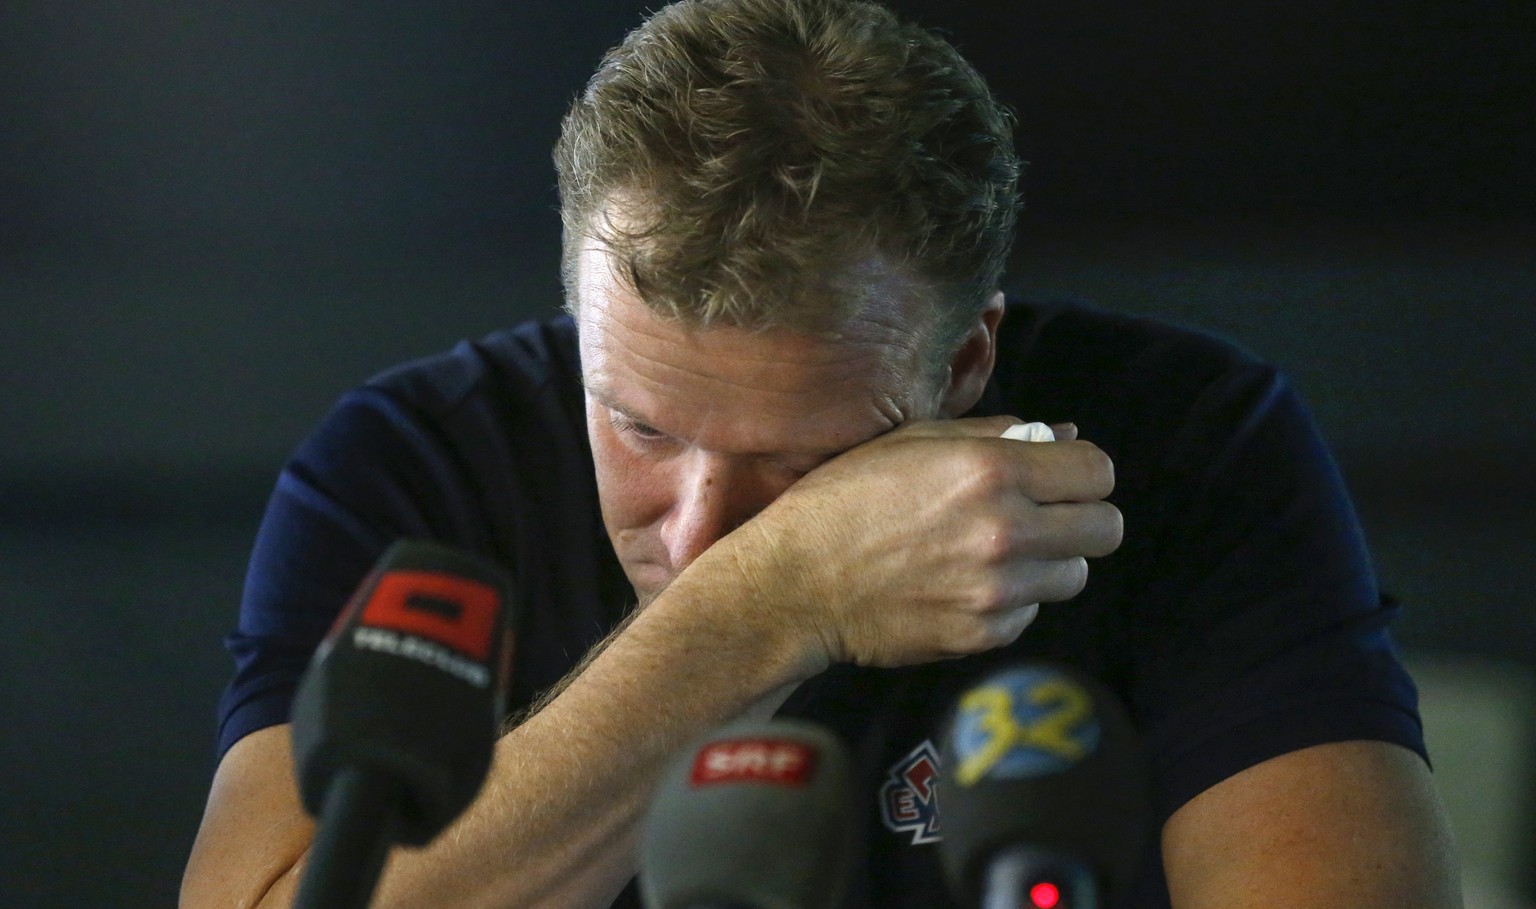 Schläpfer hat während der Pressekonferenz mit Tränen zu kämpfen.